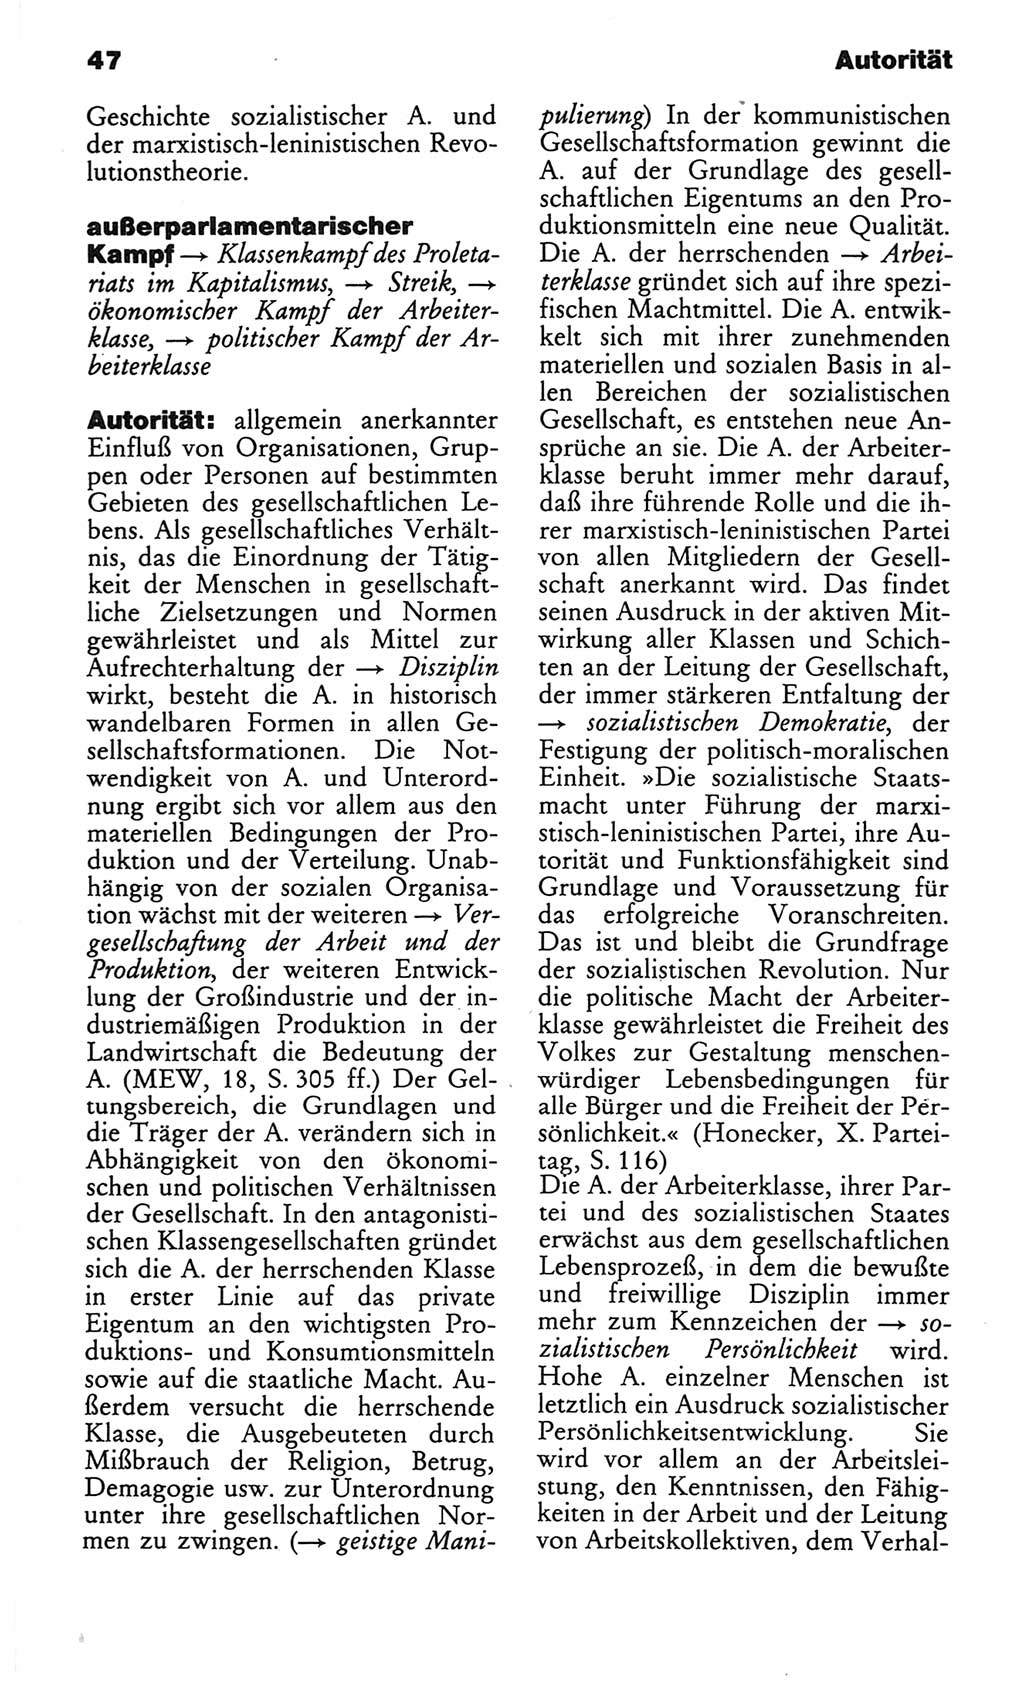 Wörterbuch des wissenschaftlichen Kommunismus [Deutsche Demokratische Republik (DDR)] 1982, Seite 47 (Wb. wiss. Komm. DDR 1982, S. 47)